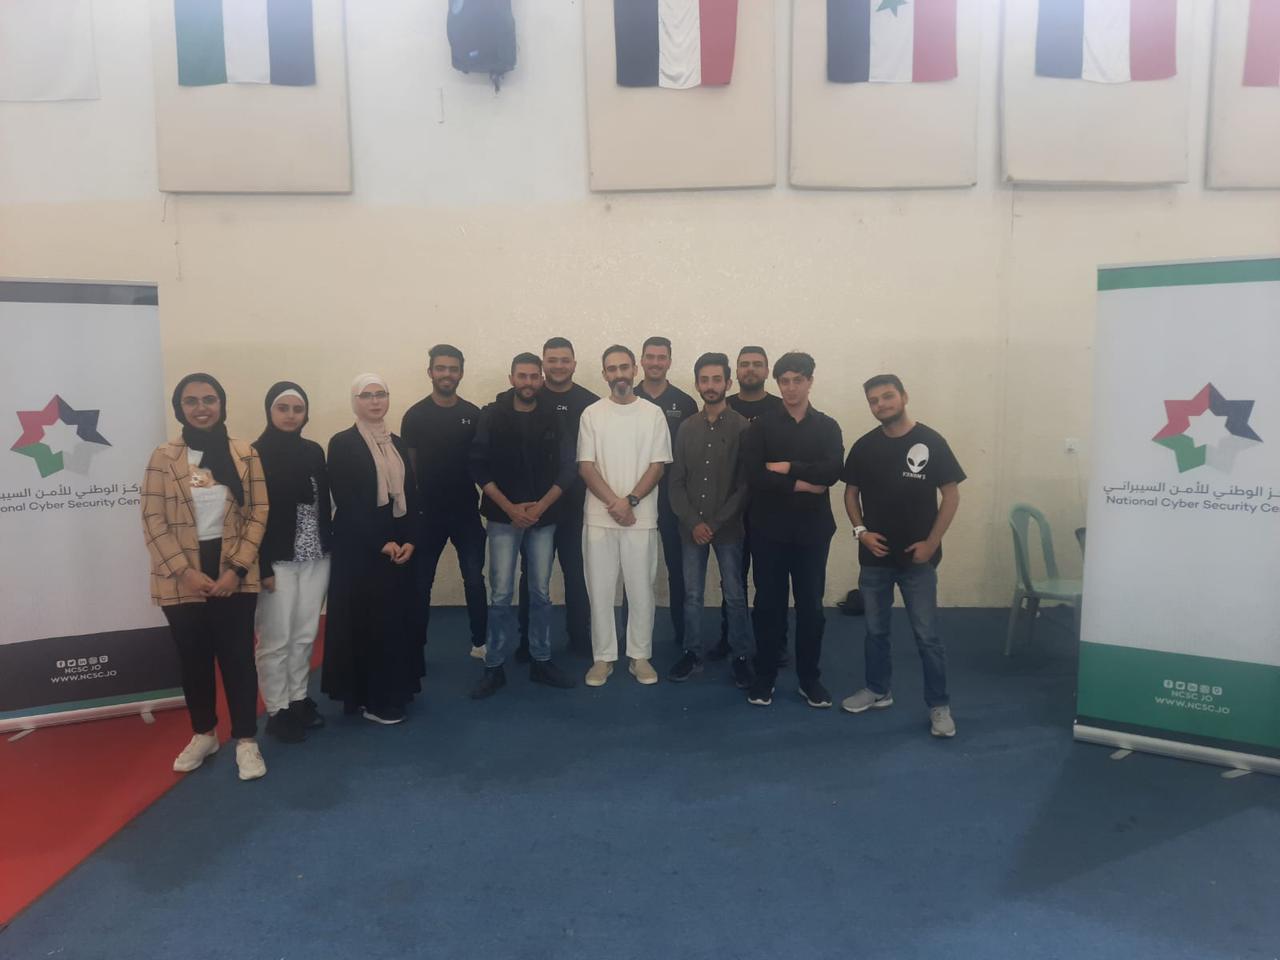 العلوم الحاسوبية والمعلوماتية في "عمان العربية" تشارك في المستوى المتقدم لتدريب محاربي السايبر 1